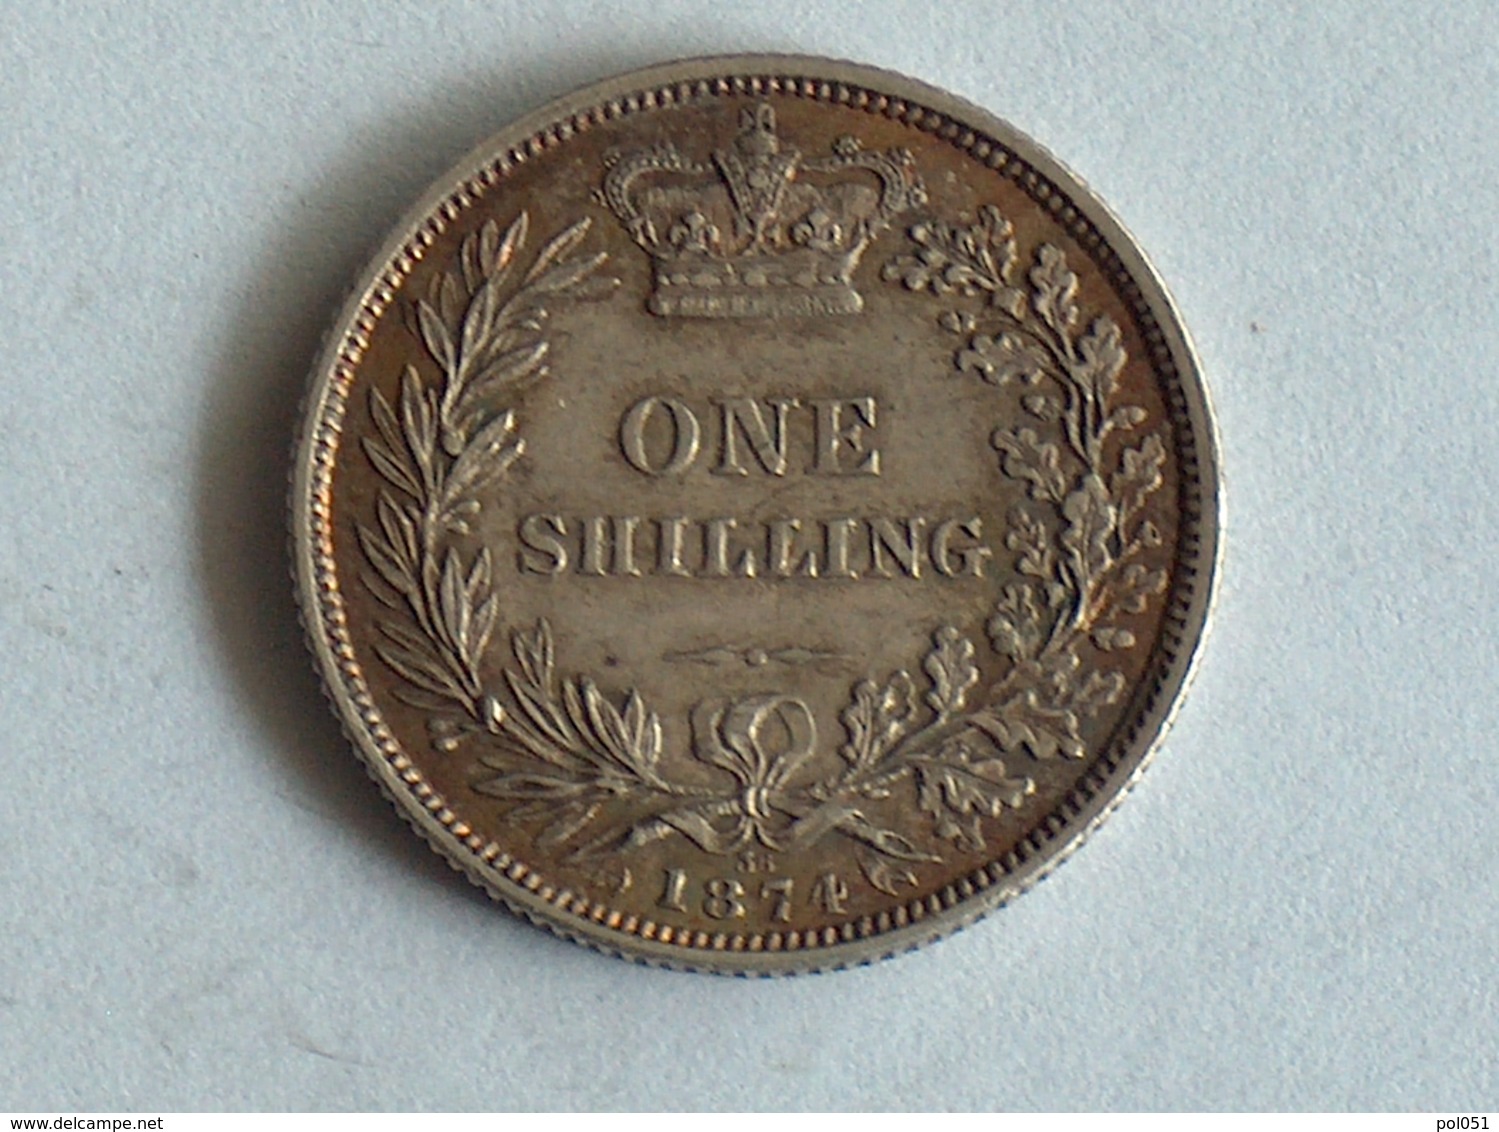 UK 1 SHILLING 1874 Die 36 Argent Silver - I. 1 Shilling